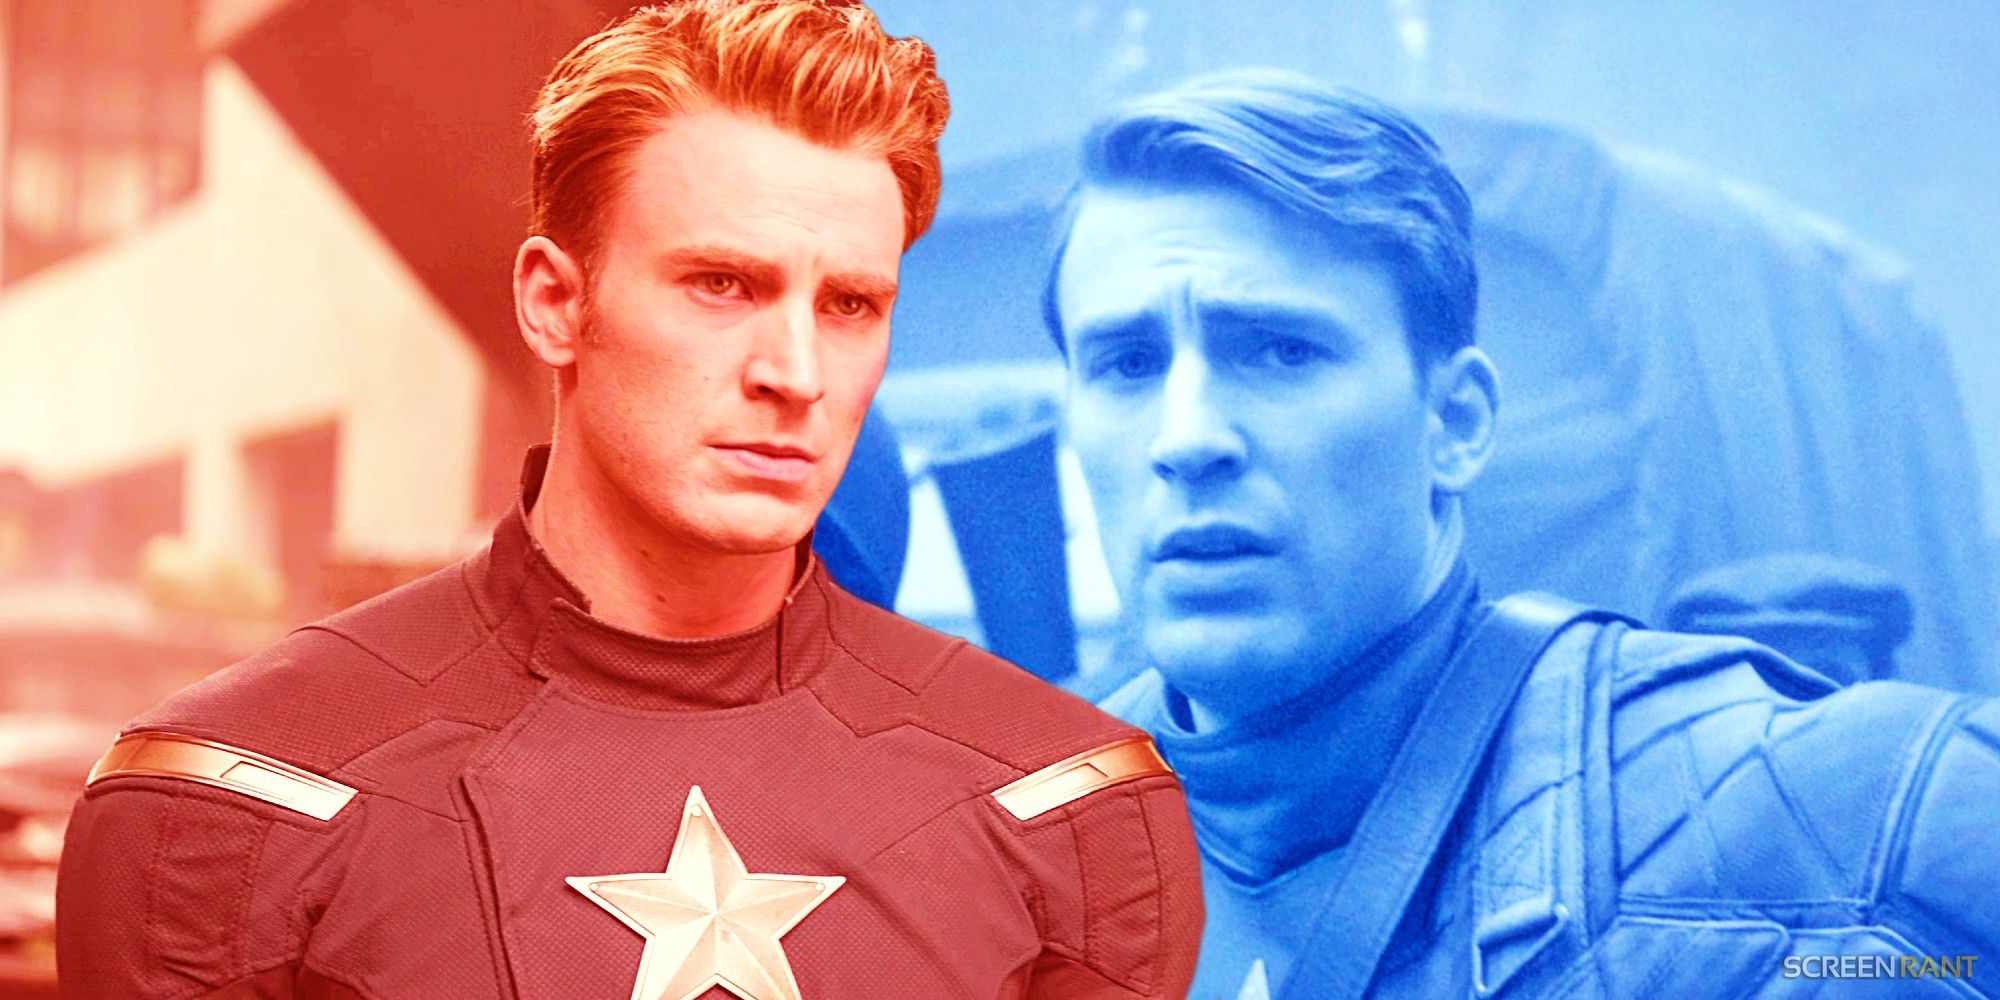 Captain America In Avengers Endgame and The First Avenger